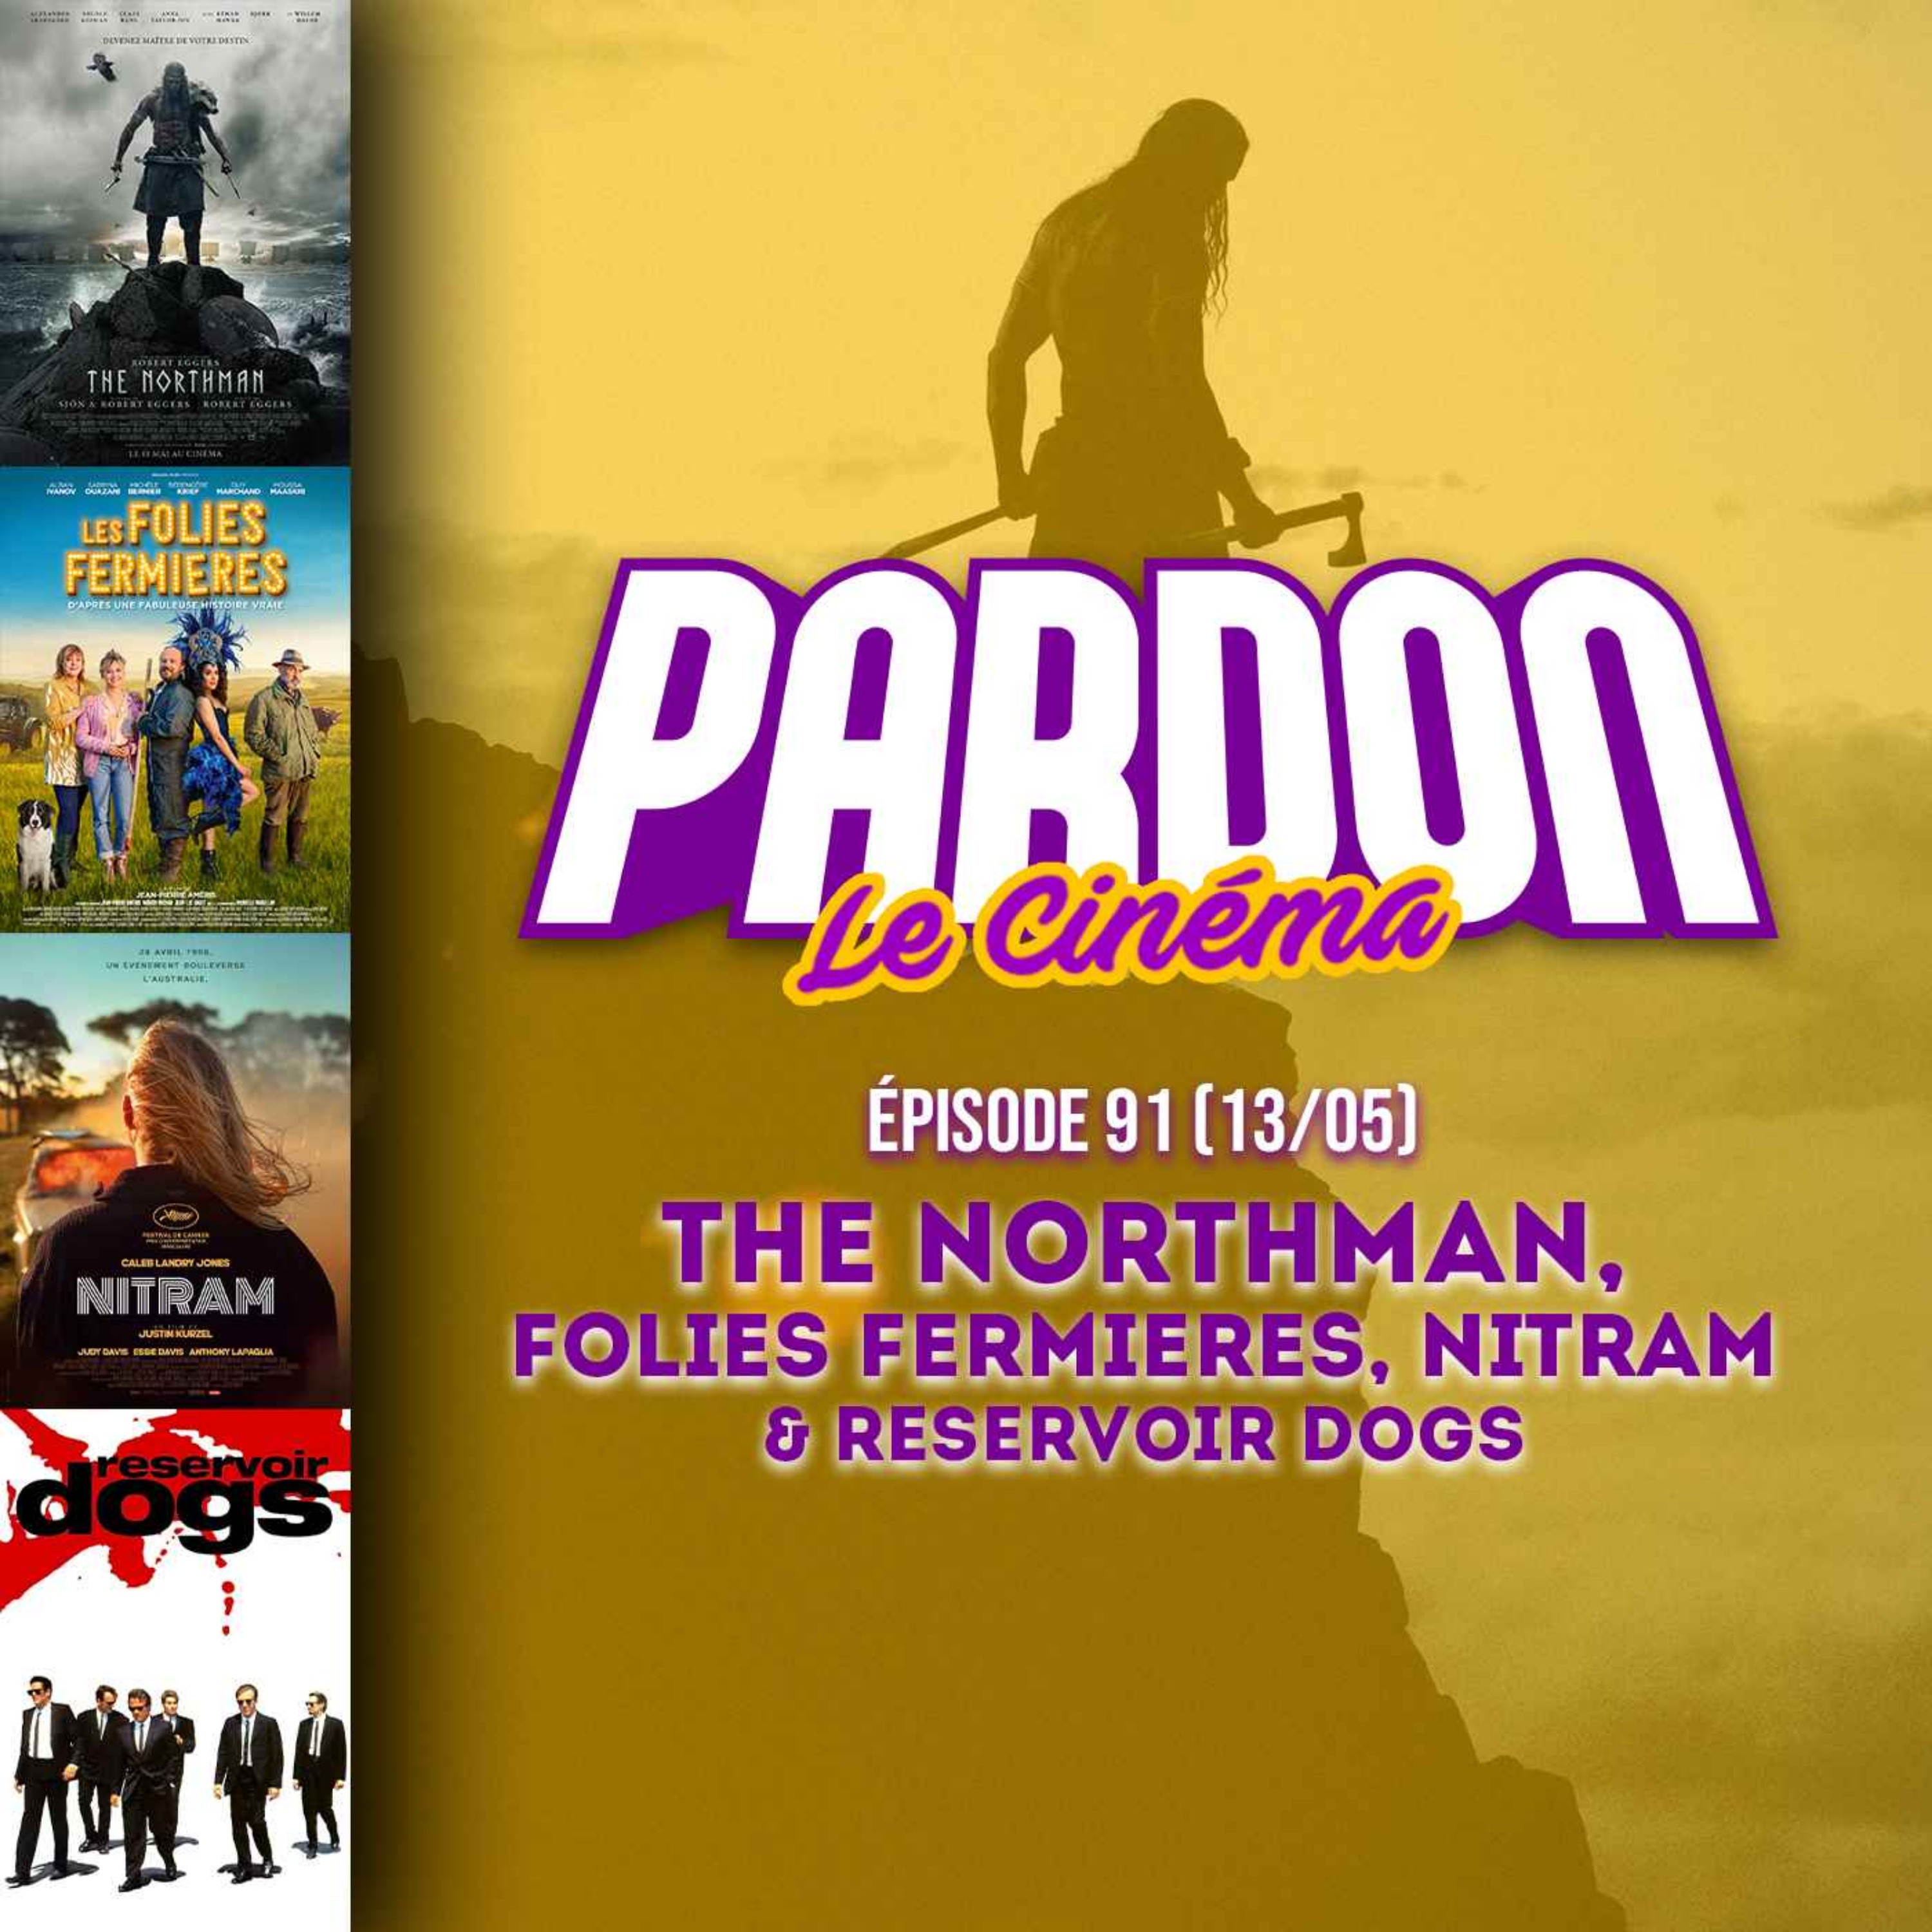 THE NORTHMAN, FOLIES FERMIÈRES, NITRAM & RESERVOIR DOGS